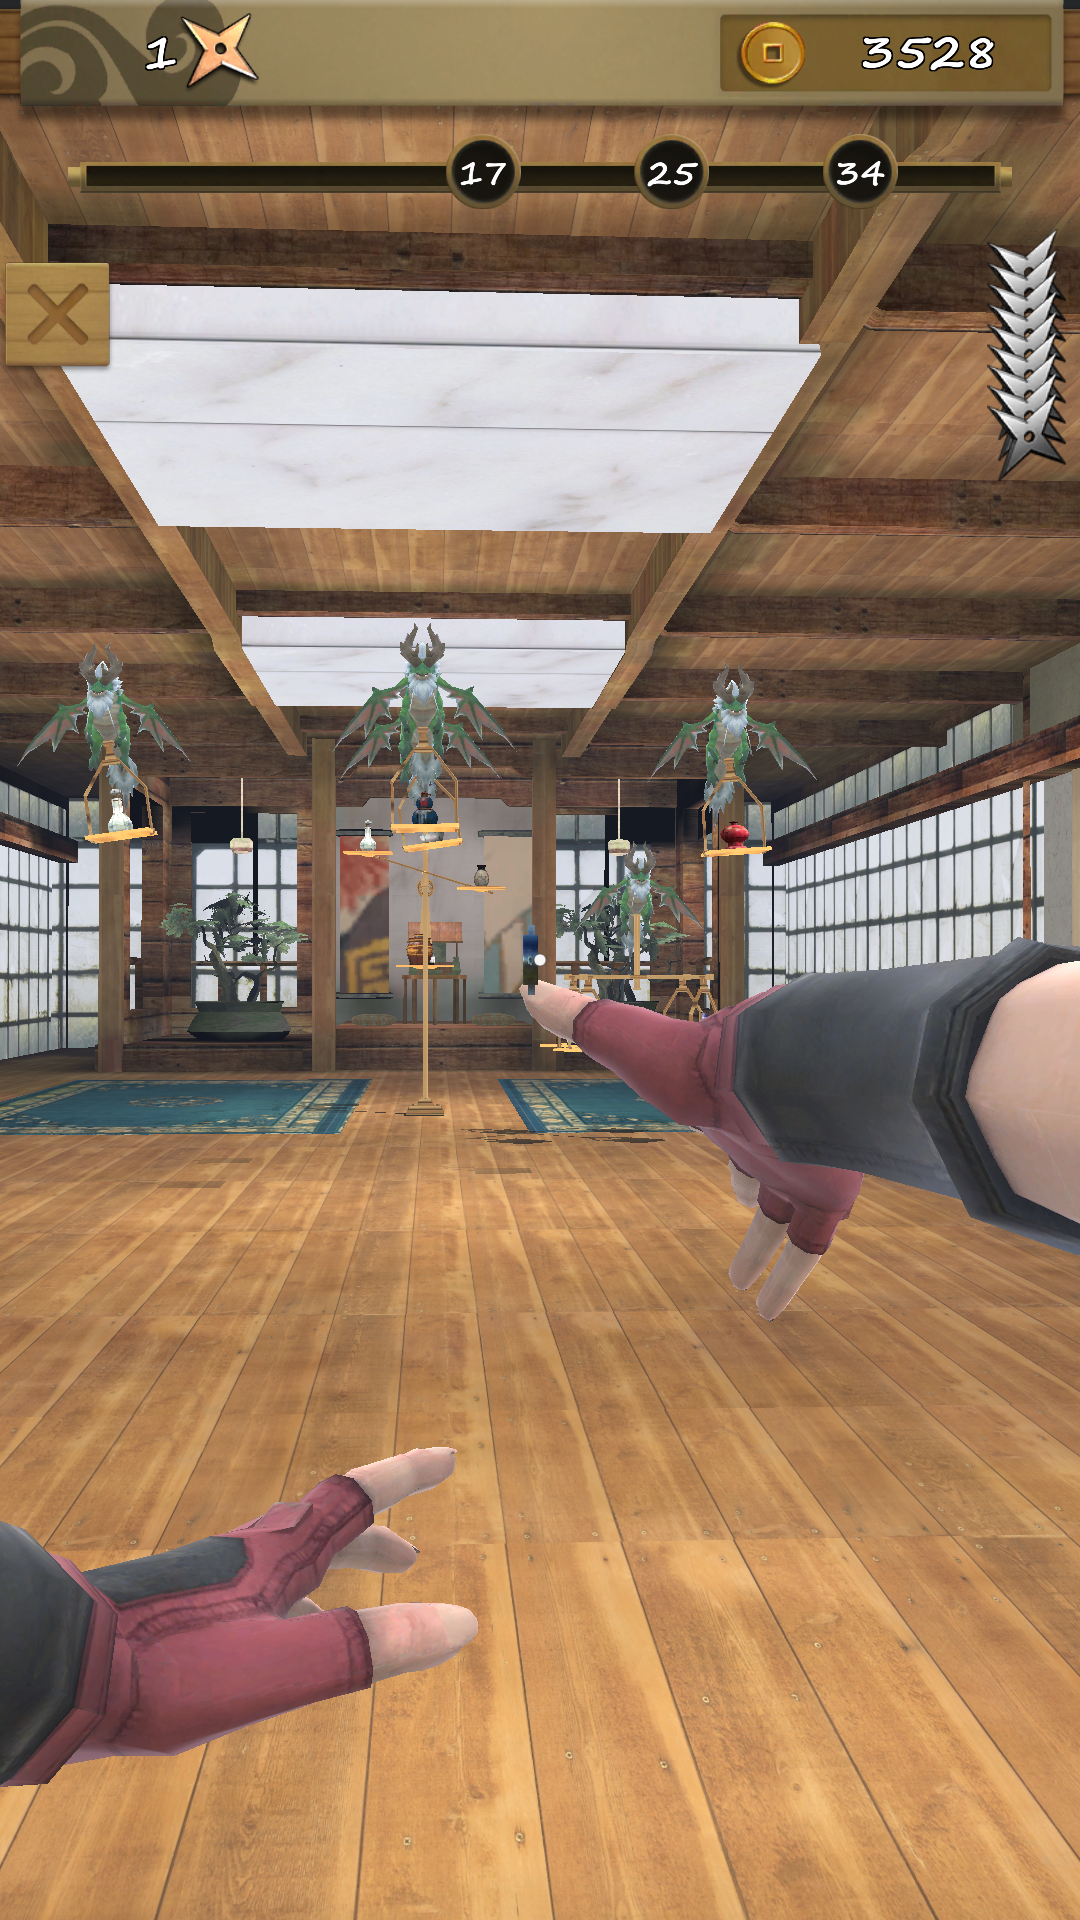 Screenshot 1 of Ninja Shuriken: Dartschießen 3.3